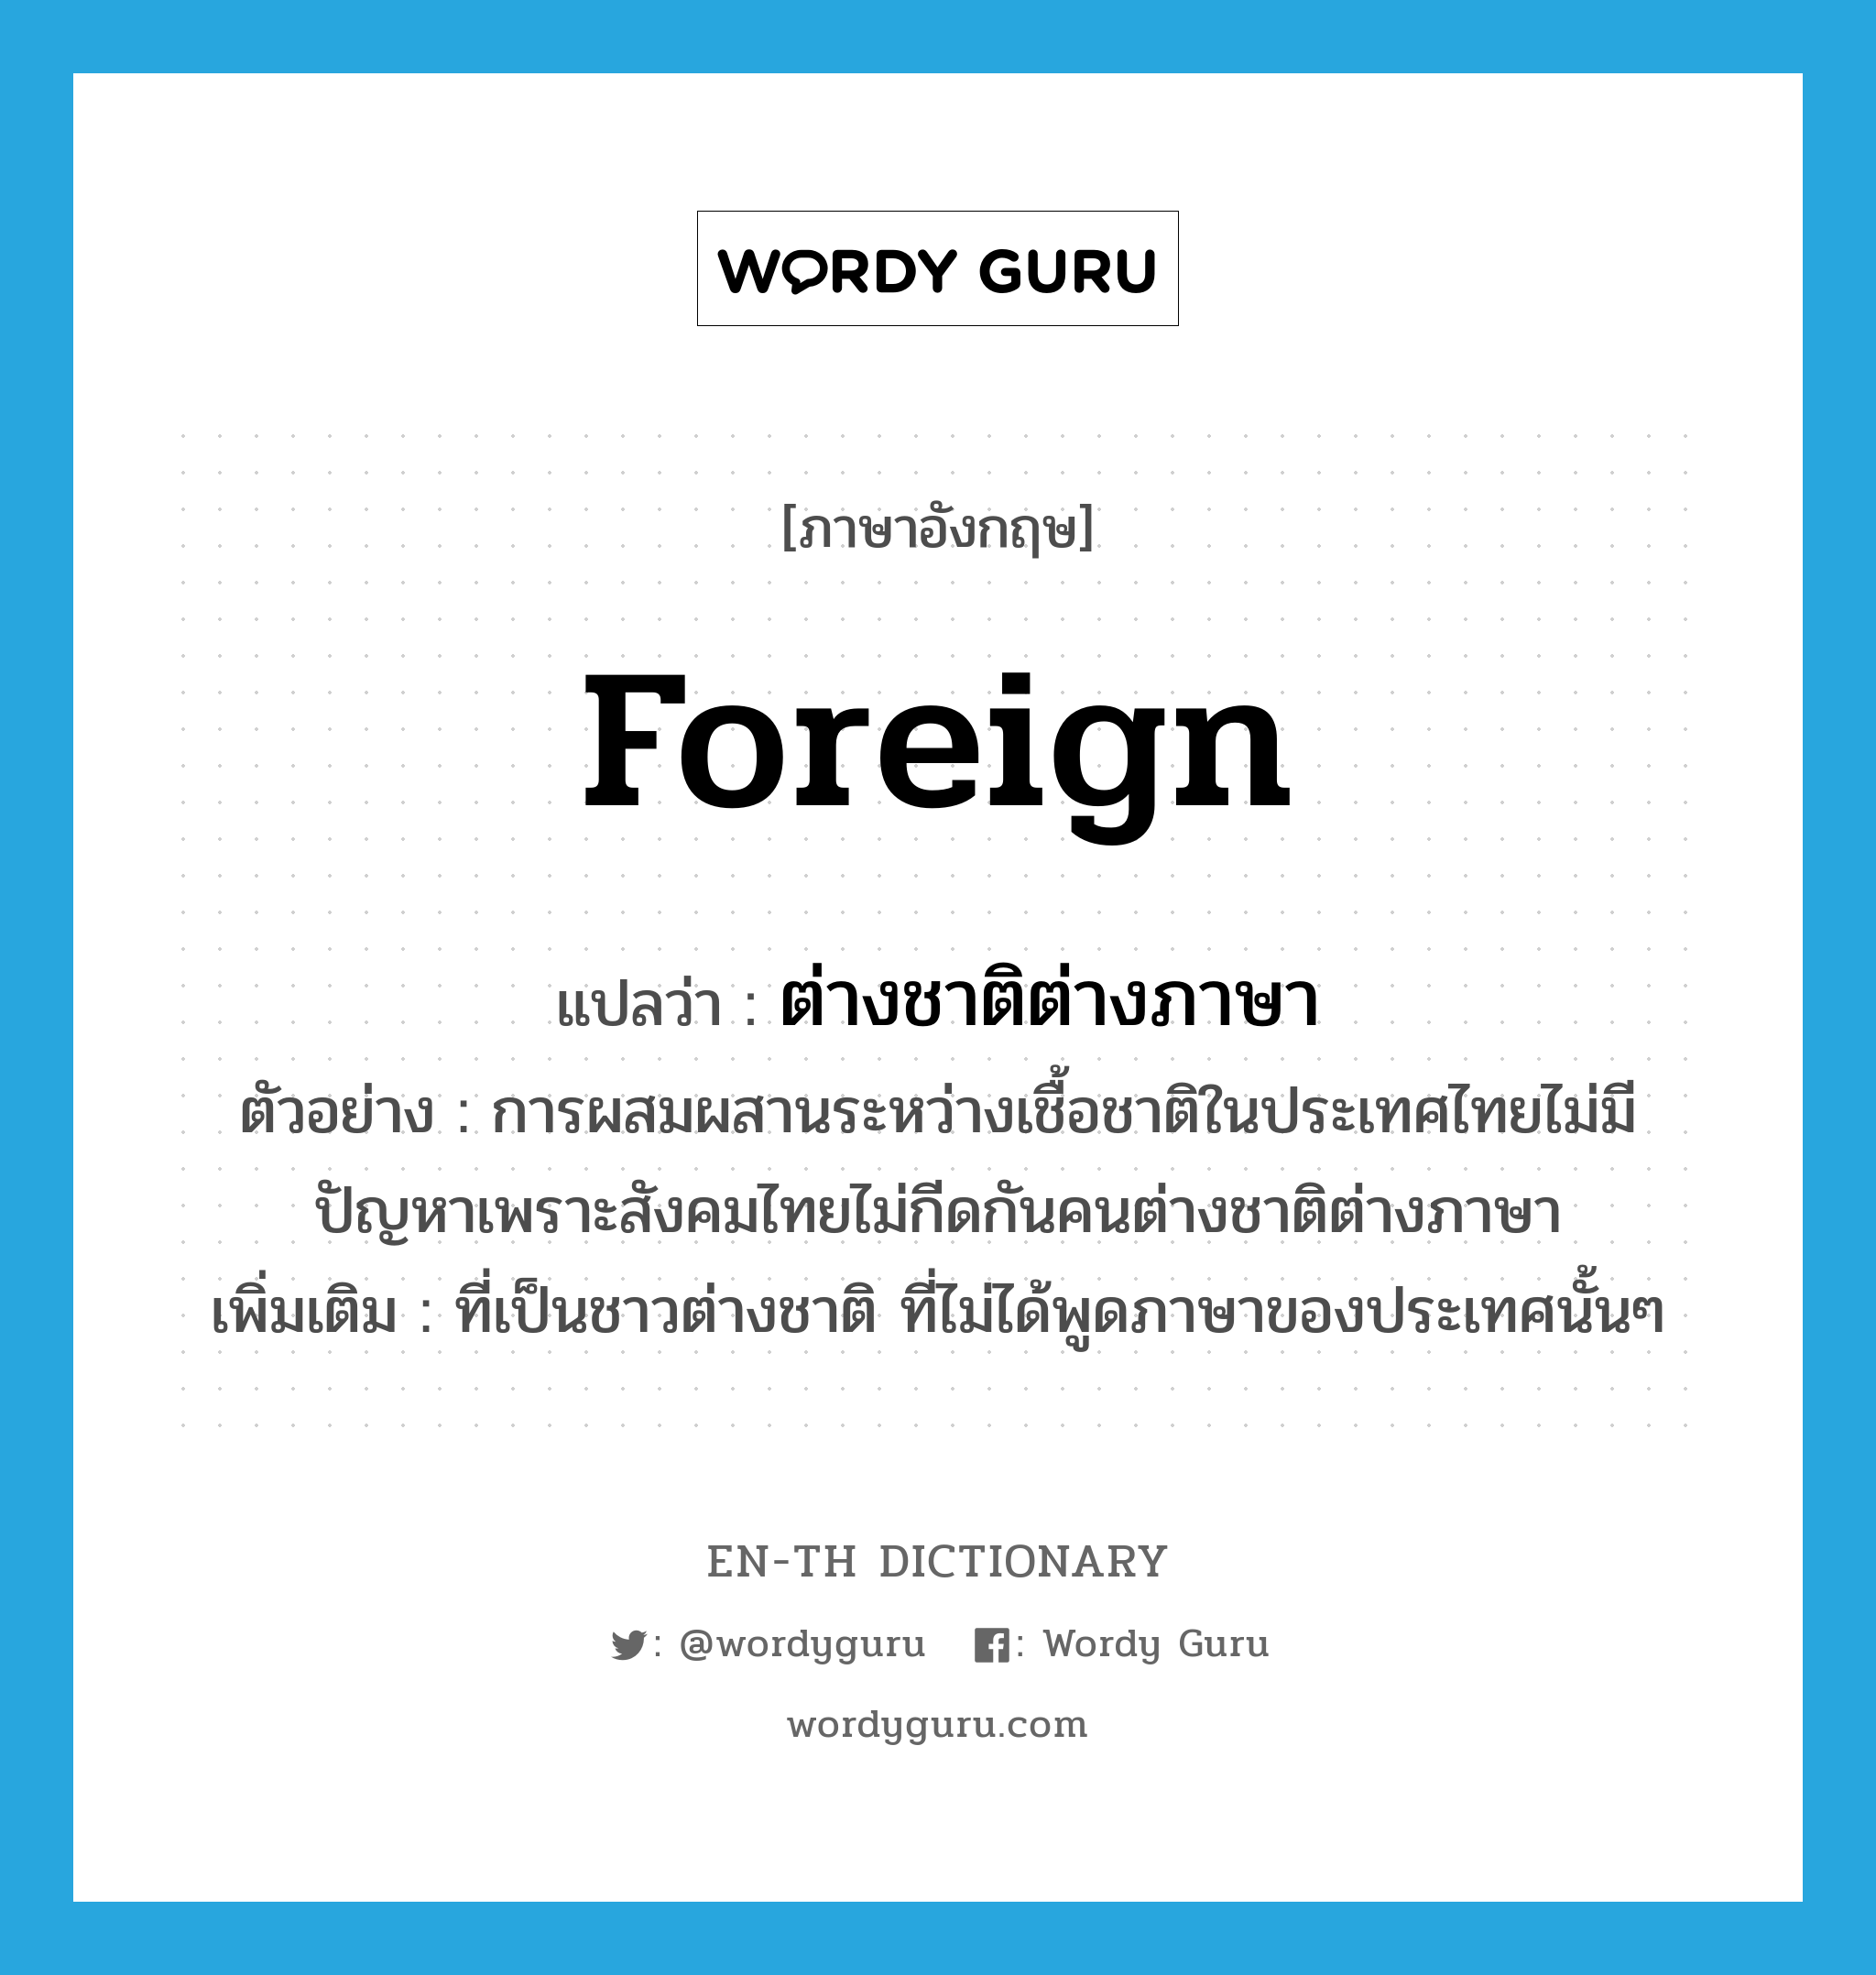 foreign แปลว่า?, คำศัพท์ภาษาอังกฤษ foreign แปลว่า ต่างชาติต่างภาษา ประเภท ADJ ตัวอย่าง การผสมผสานระหว่างเชื้อชาติในประเทศไทยไม่มีปัญหาเพราะสังคมไทยไม่กีดกันคนต่างชาติต่างภาษา เพิ่มเติม ที่เป็นชาวต่างชาติ ที่ไม่ได้พูดภาษาของประเทศนั้นๆ หมวด ADJ